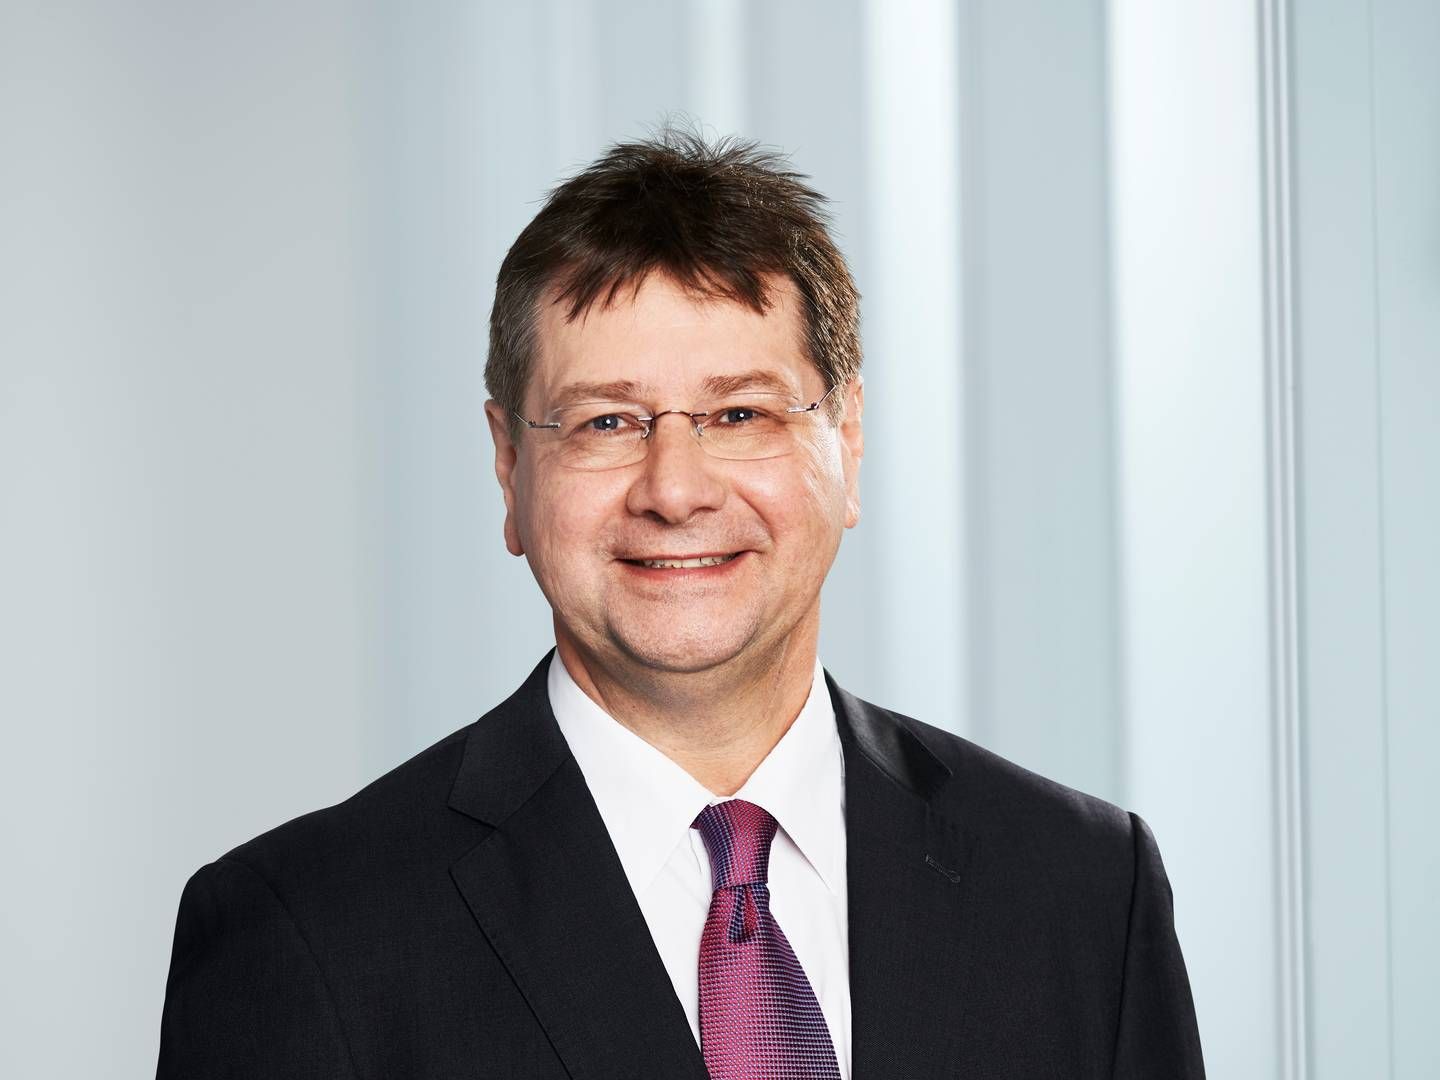 Peter Kohls ist neues Vorstandsmitglied der Frankfurter Bankgesellschaft. | Photo: Frankfurter Bankgesellschaft